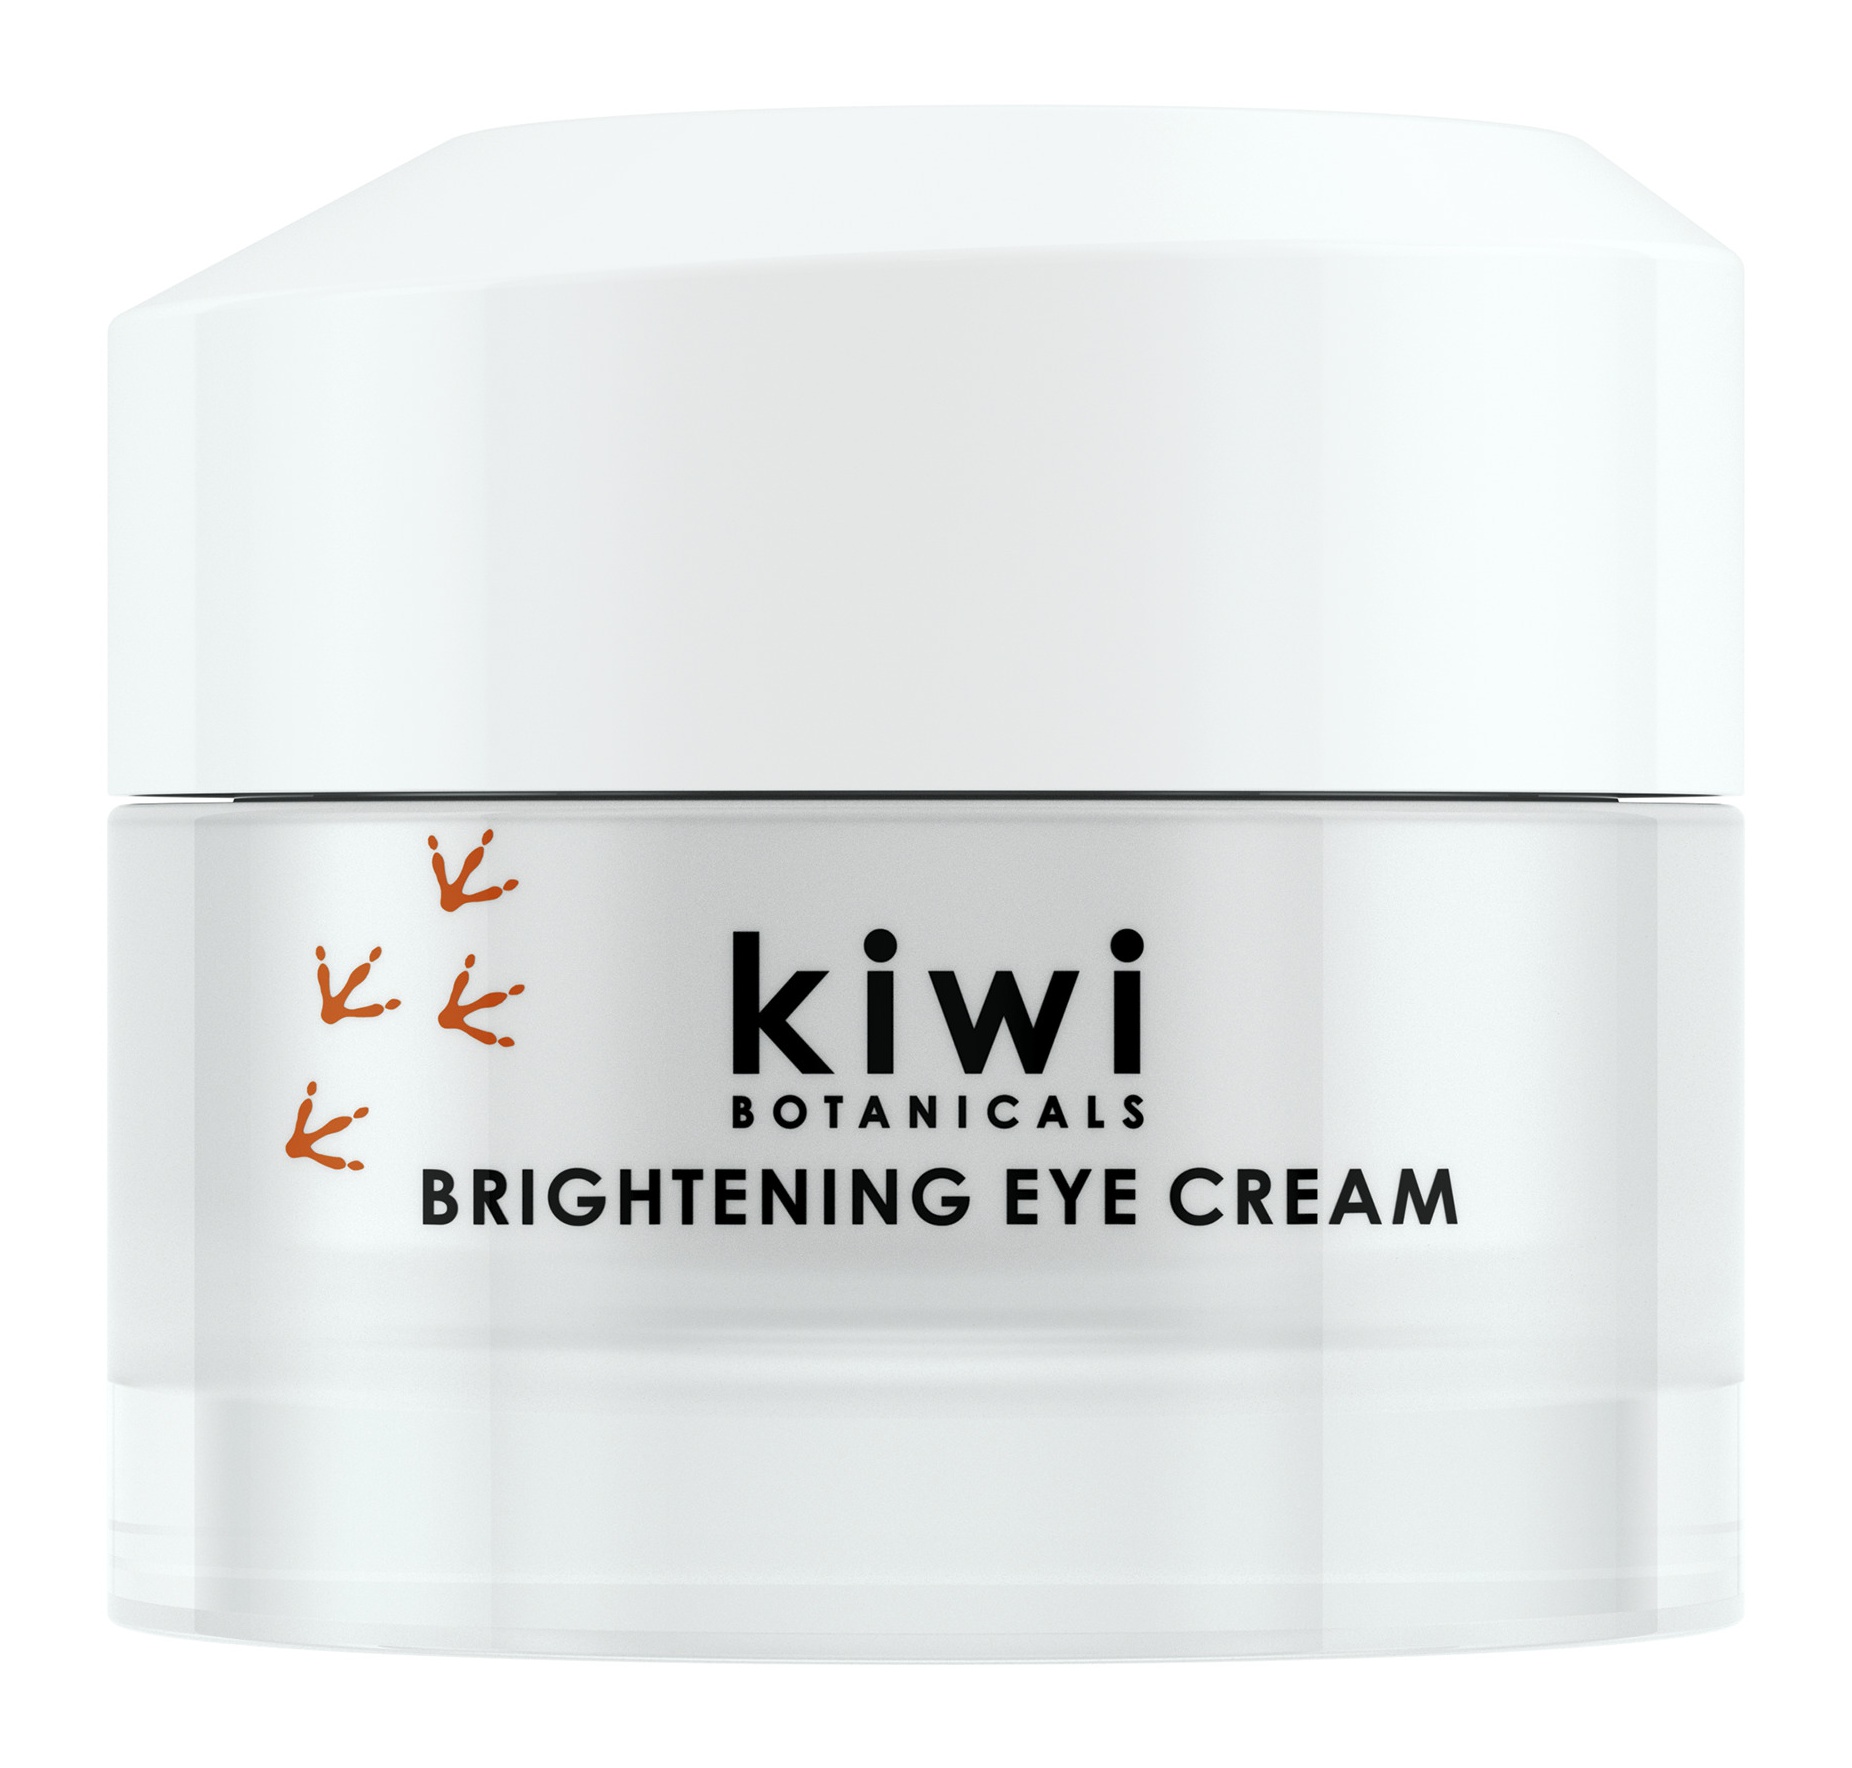 Kiwi Botanicals Brightening Eye Cream with Manuka Honey